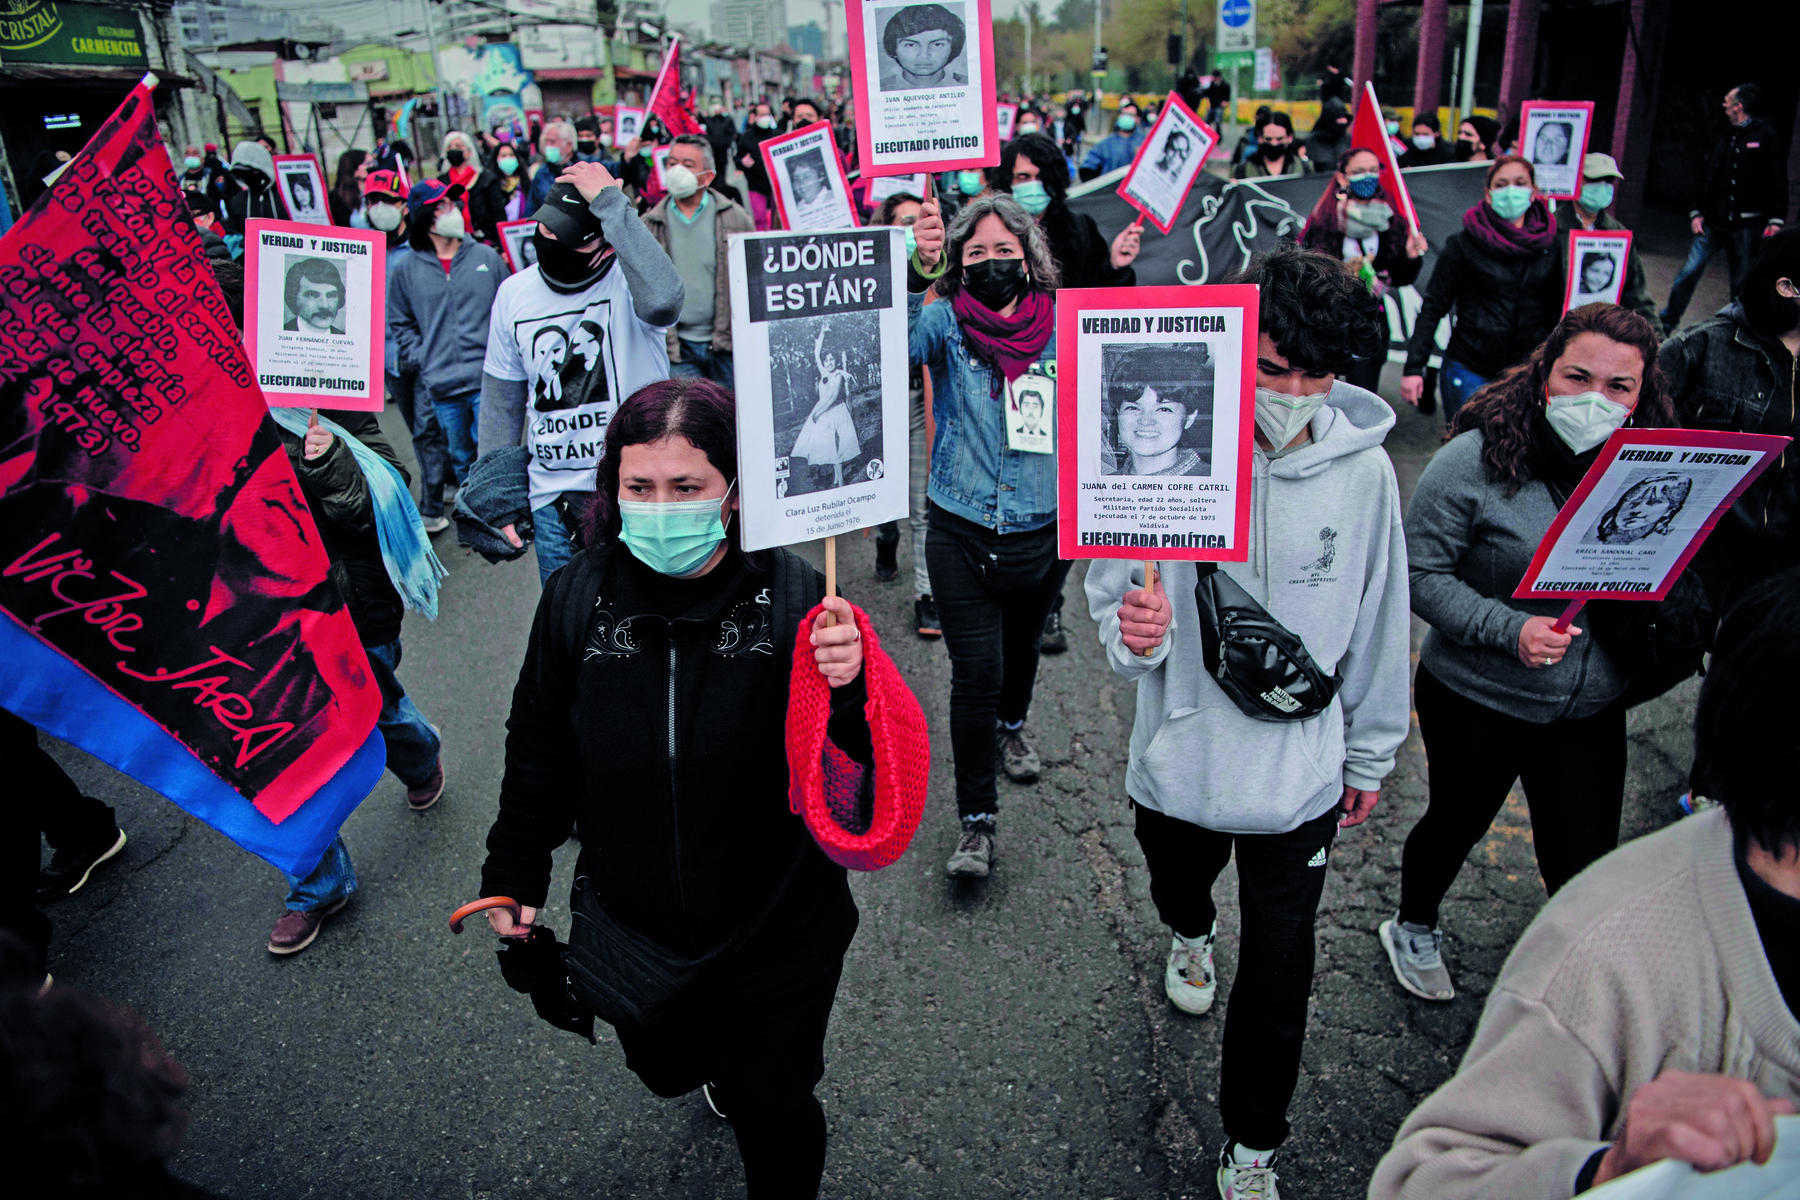 Fotografia. Manifestantes usando máscaras de proteção facial carregam cartazes com fotos de pessoas diferentes. Muitos dos cartazes apresentam uma frase cuja tradução é Onde estão?